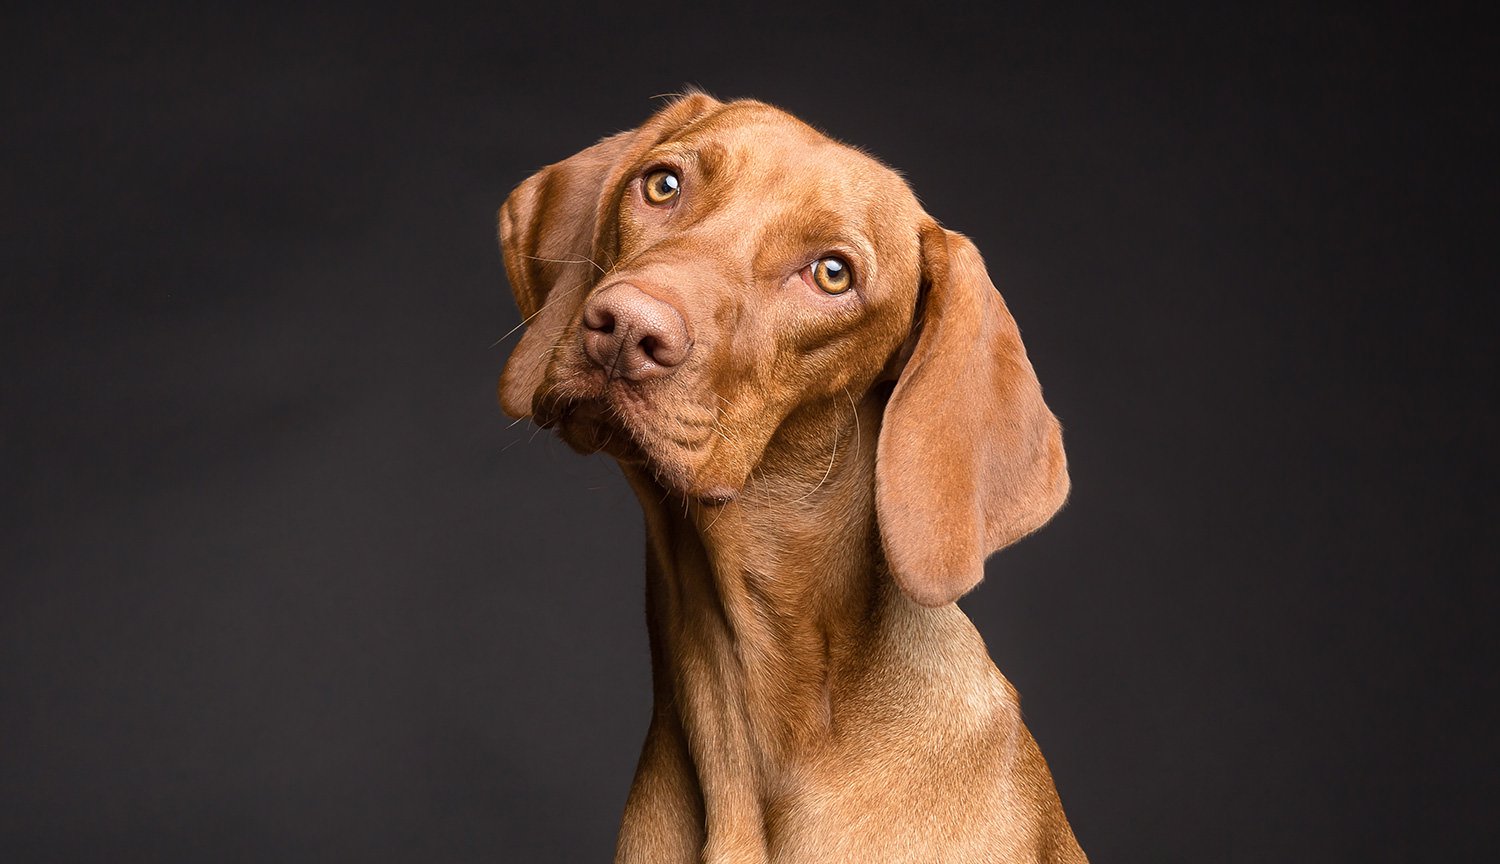 Tomografía computarizada ha demostrado que los perros entienden el habla humana